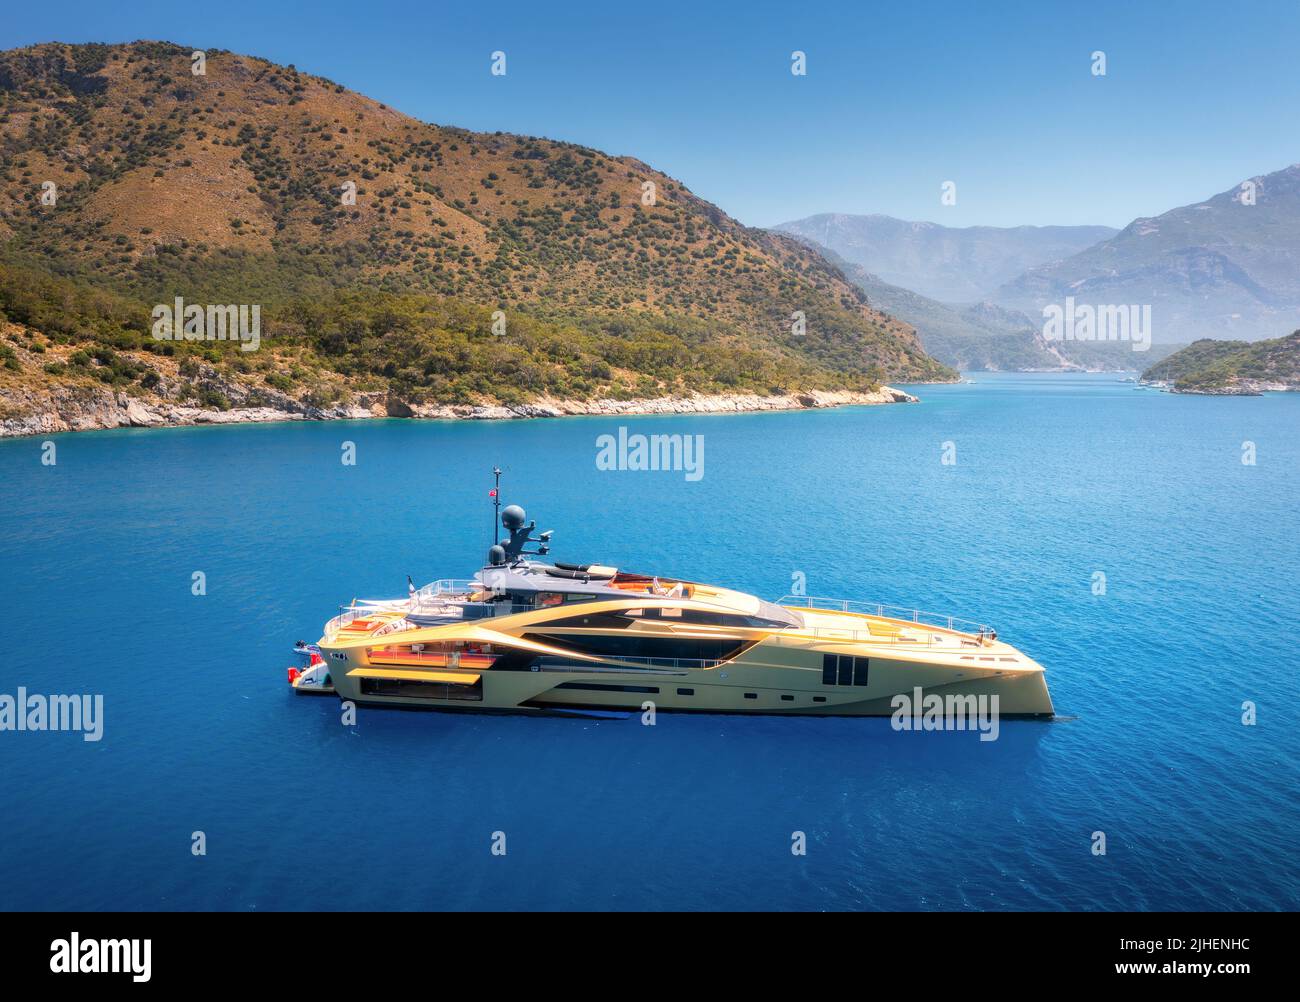 Vue aérienne du magnifique yacht doré de luxe dans la mer bleue Banque D'Images